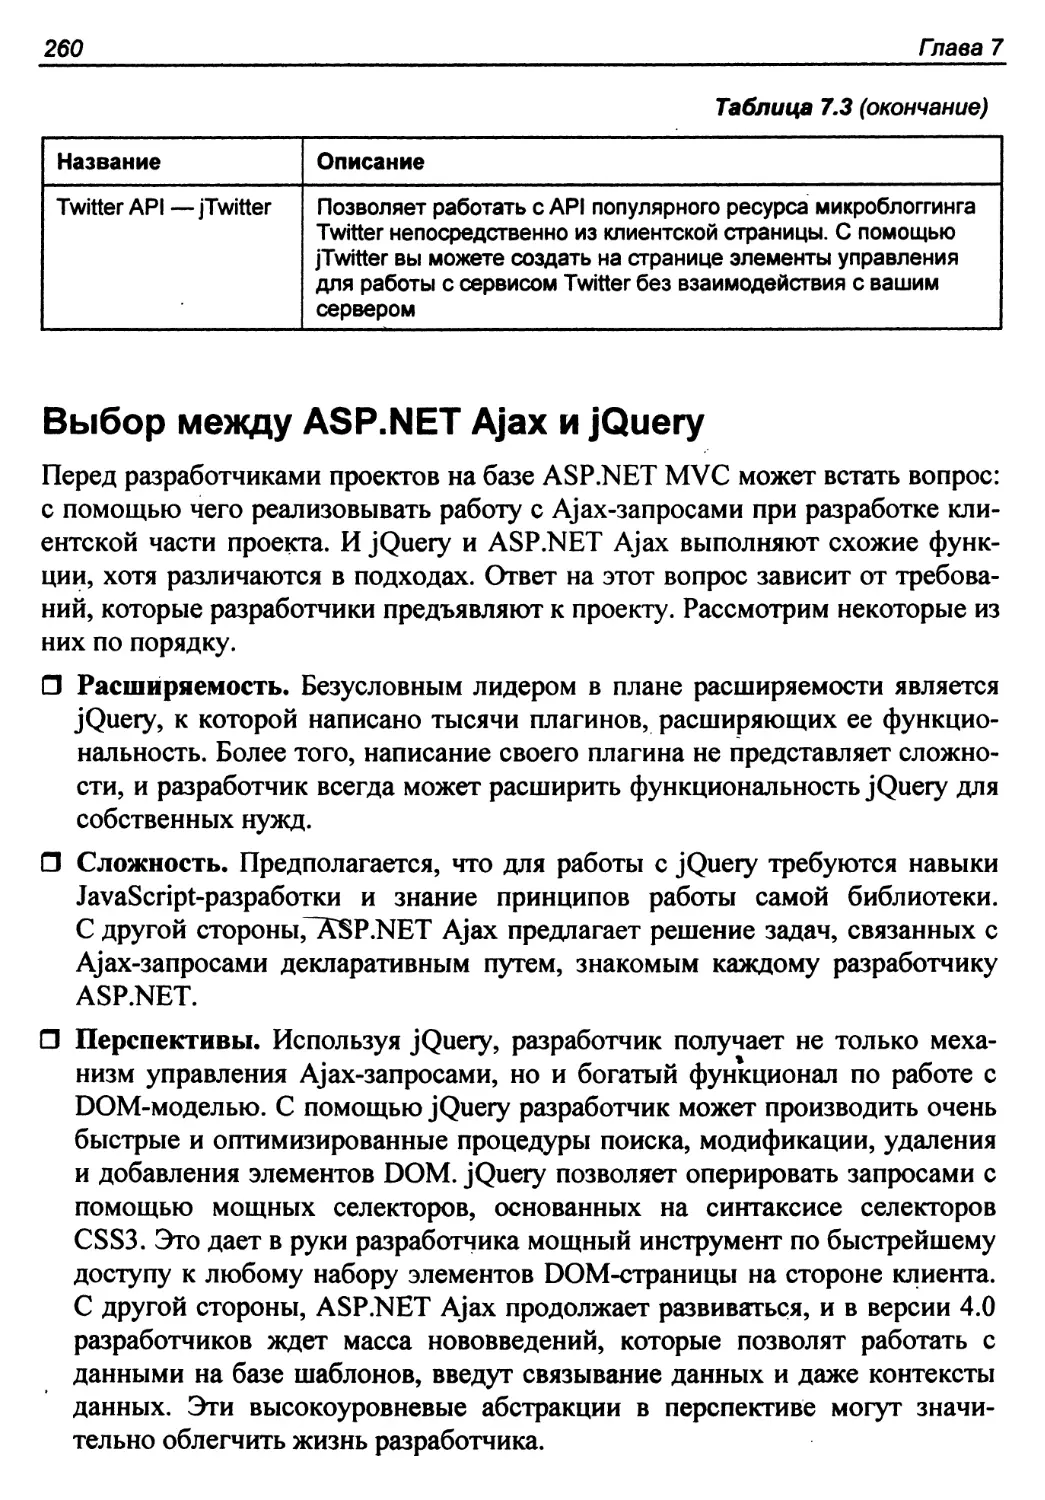 Выбор между ASP.NET Ajax и jQuery